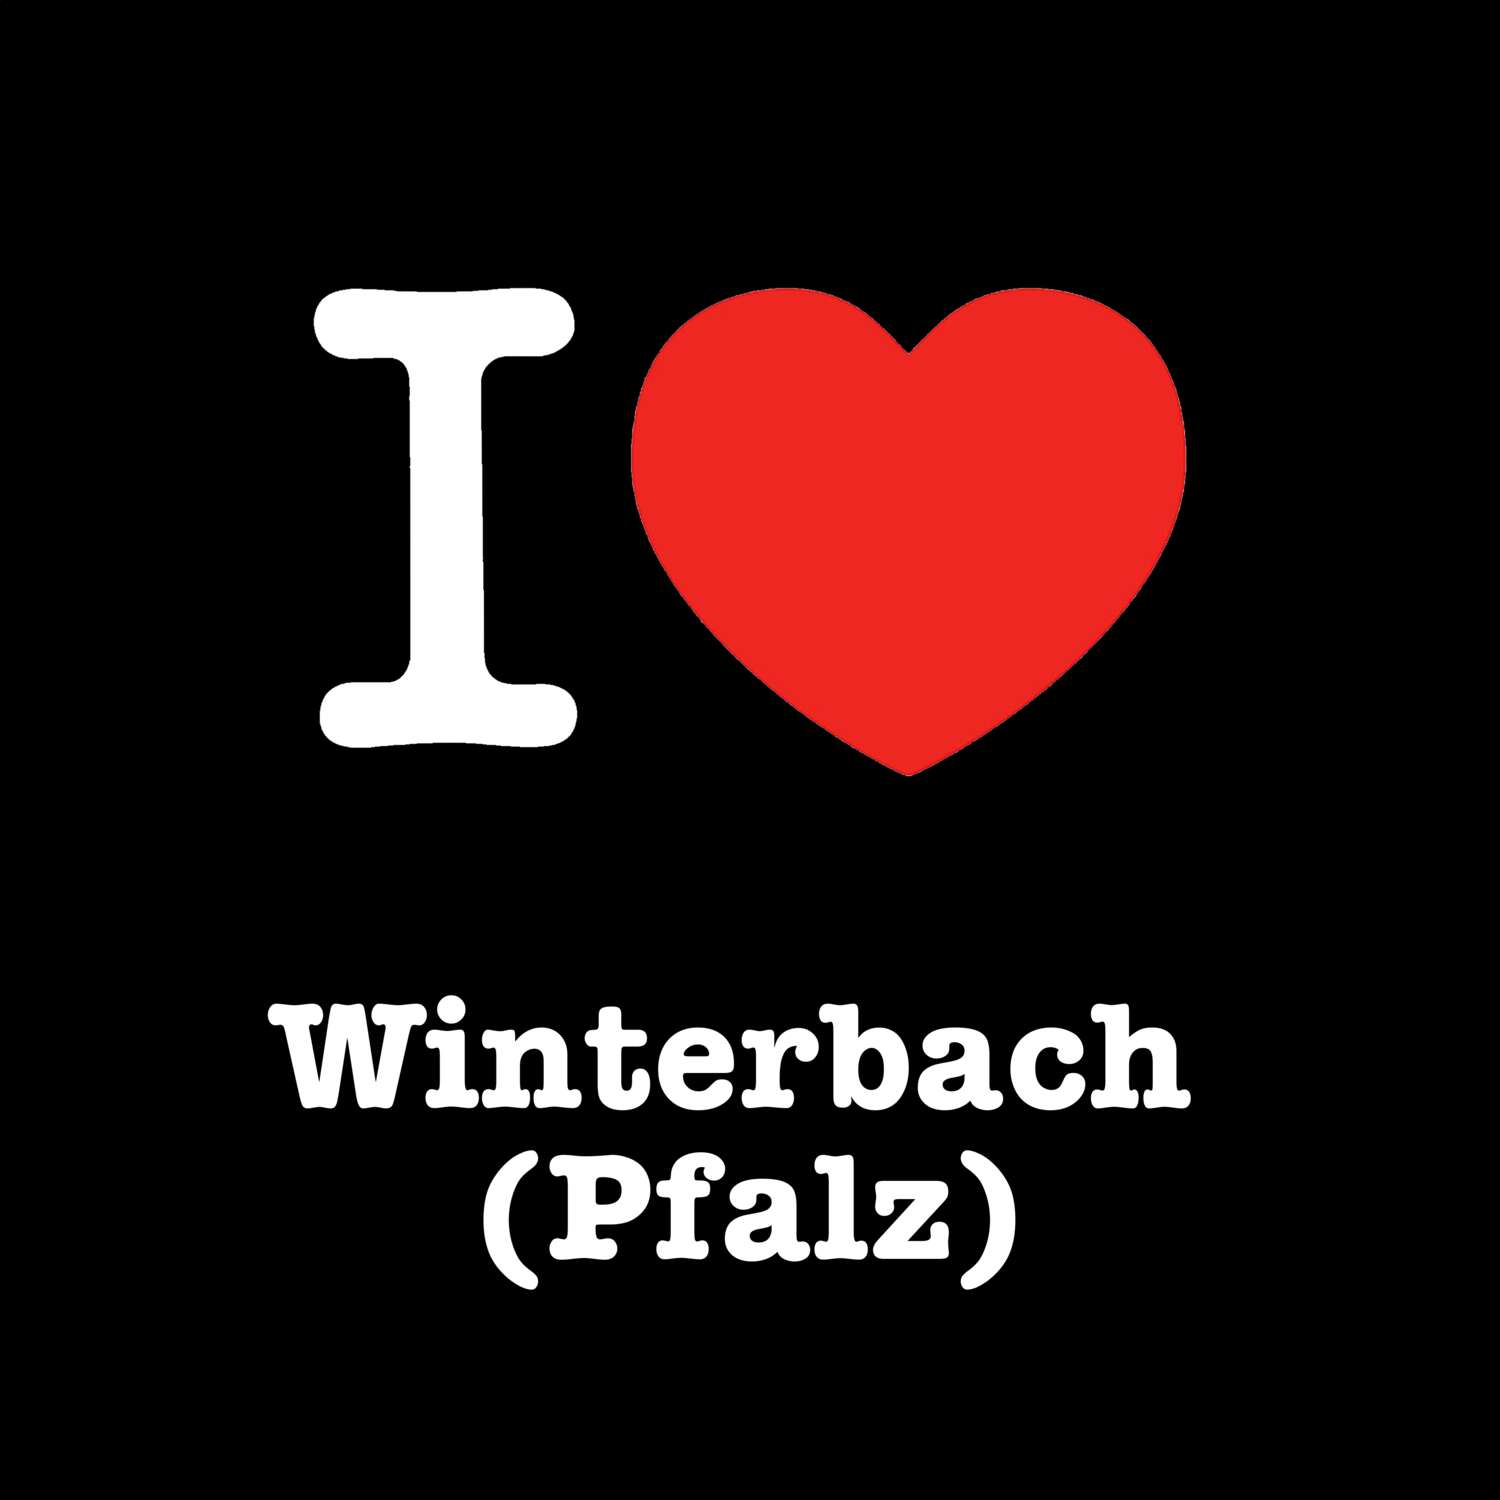 Winterbach (Pfalz) T-Shirt »I love«